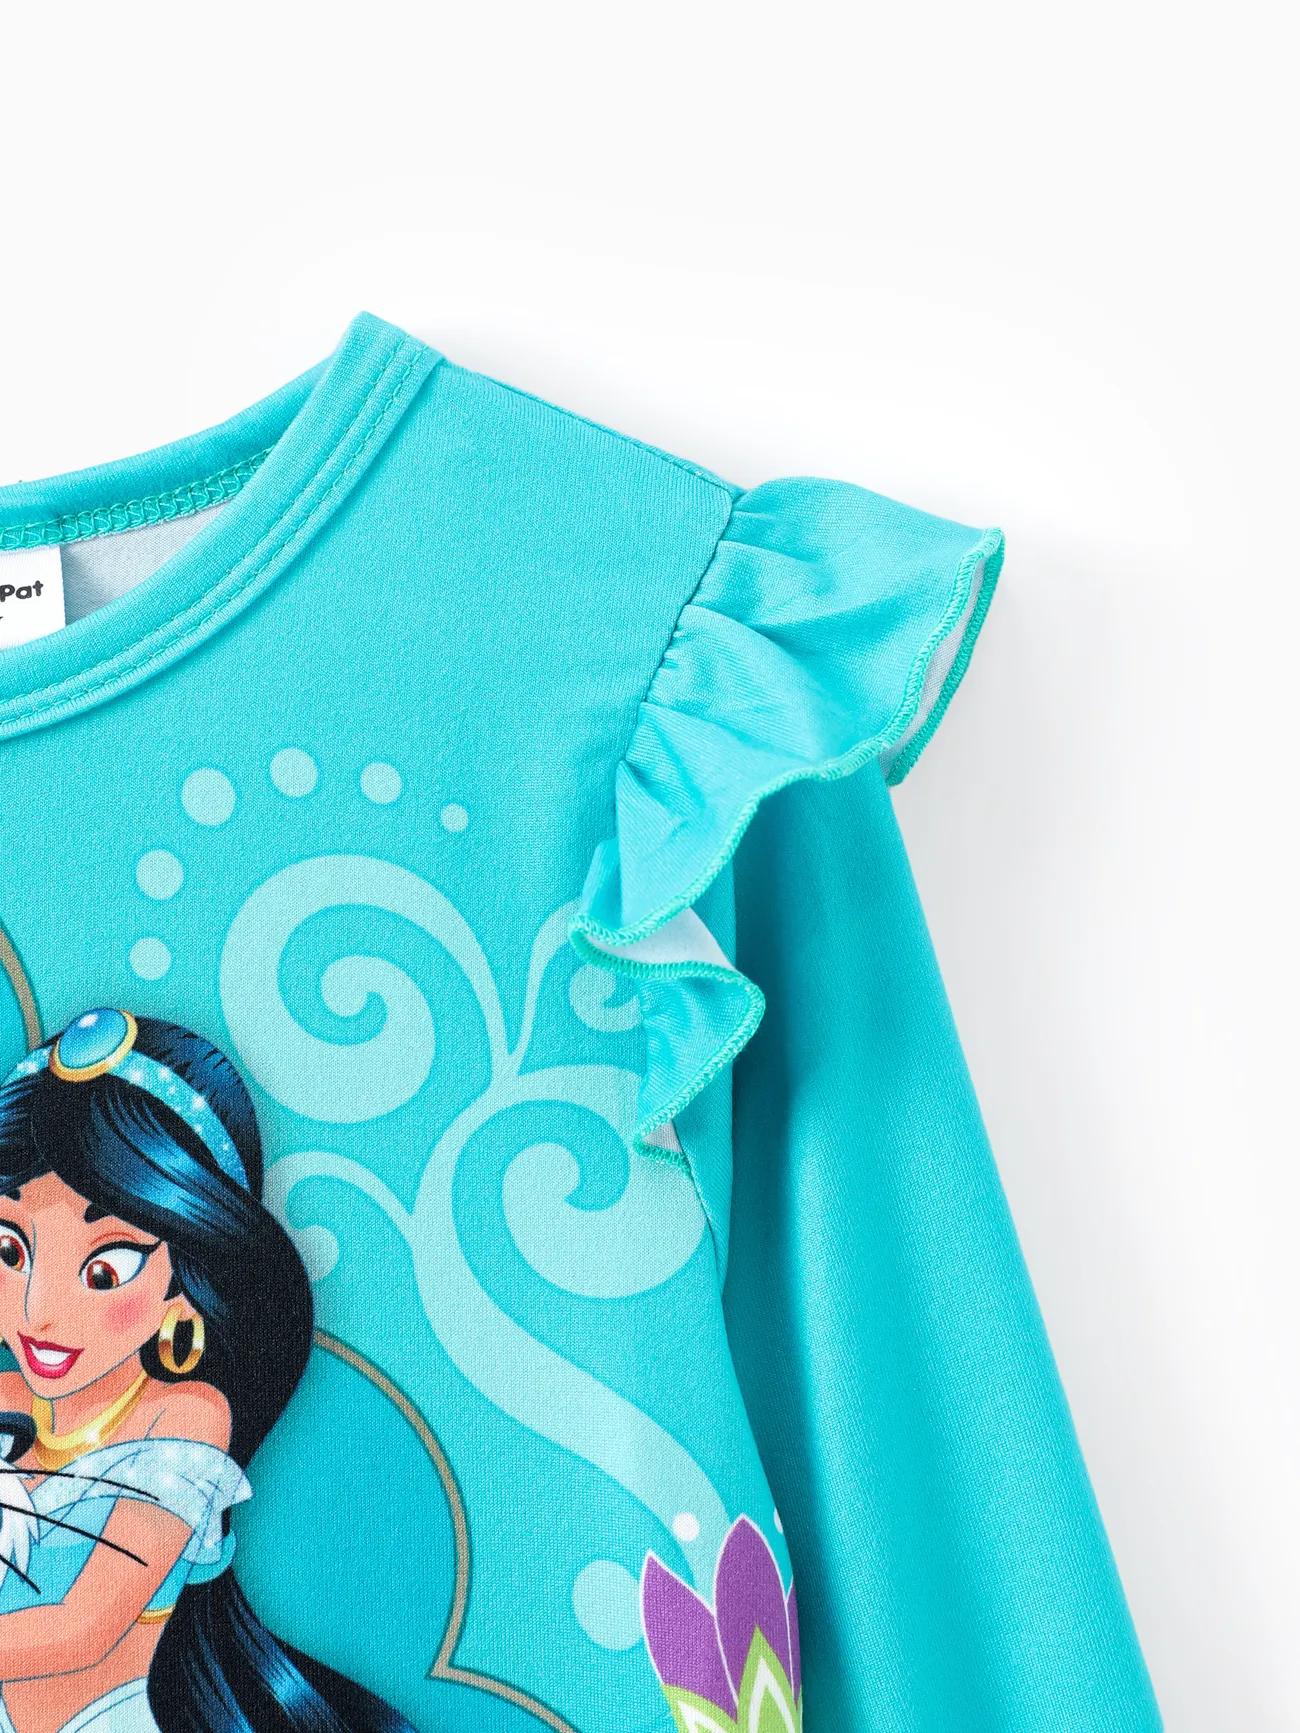 Disney Princess 2 pièces Enfant en bas âge Fille Manches à volants Enfantin ensembles de t-shirts Turquoise big image 1